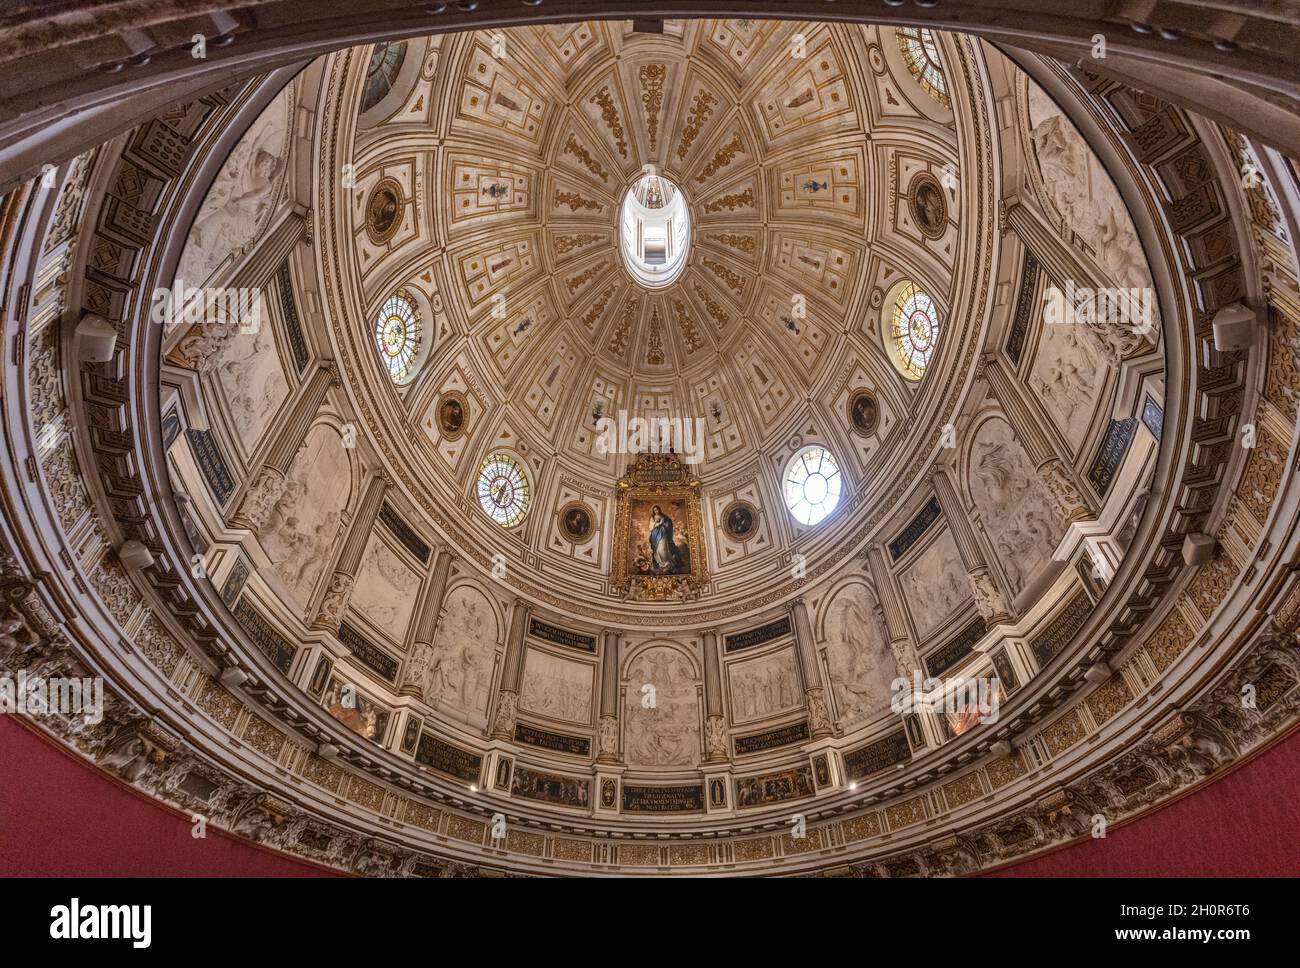 Kathedrale Von Sevilla. Das Kapitelhaus, der Raum, der sich unter dem berühmten Renaissance Dome befindet. Gemälde von Murillo. Stockfoto